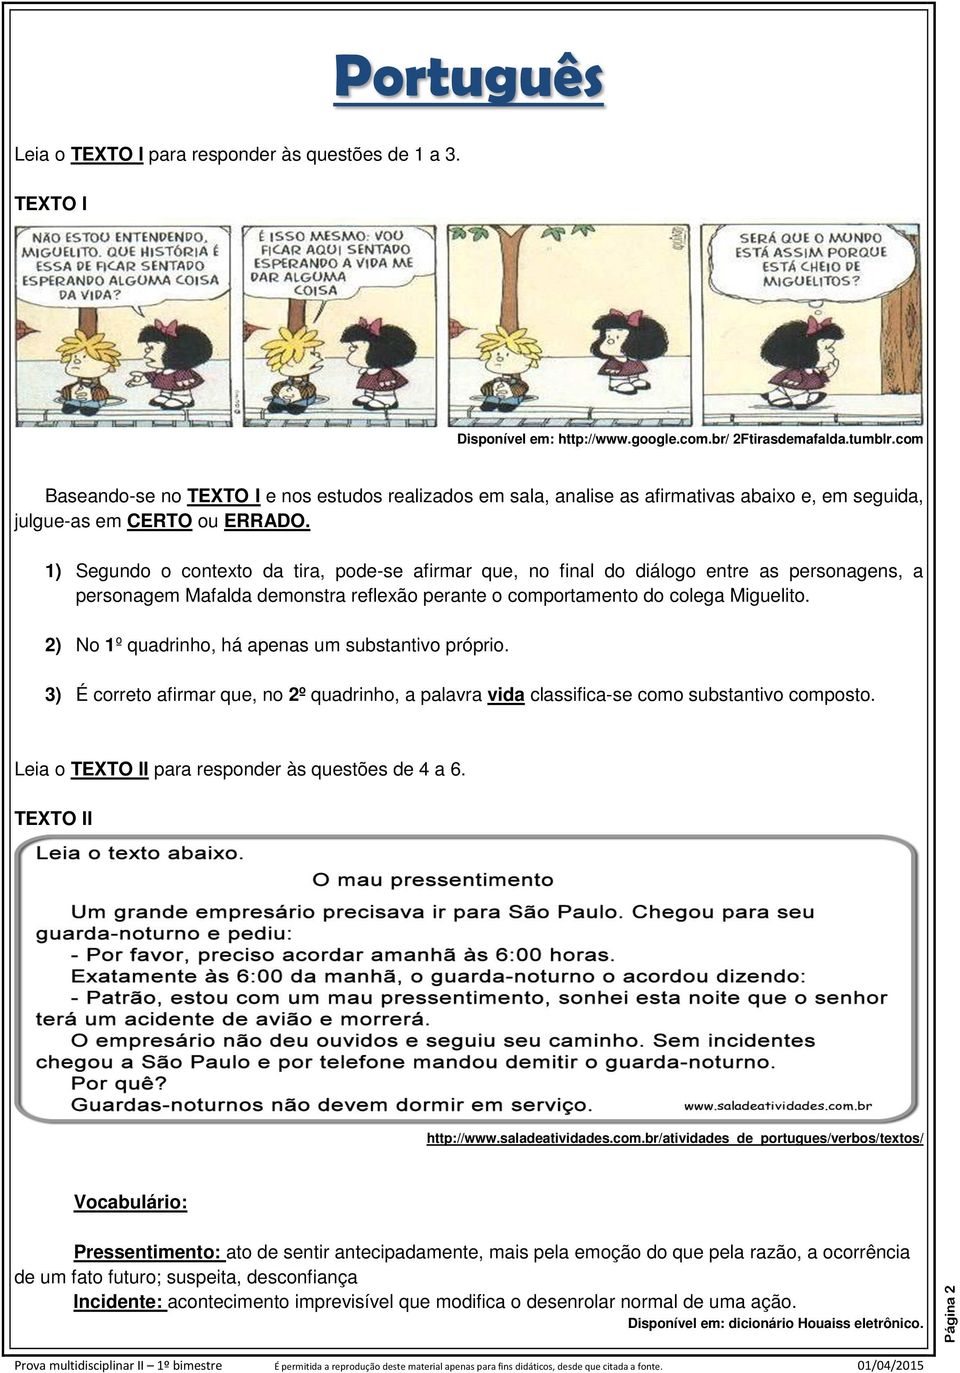 1) Segundo o contexto da tira, pode-se afirmar que, no final do diálogo entre as personagens, a personagem Mafalda demonstra reflexão perante o comportamento do colega Miguelito.